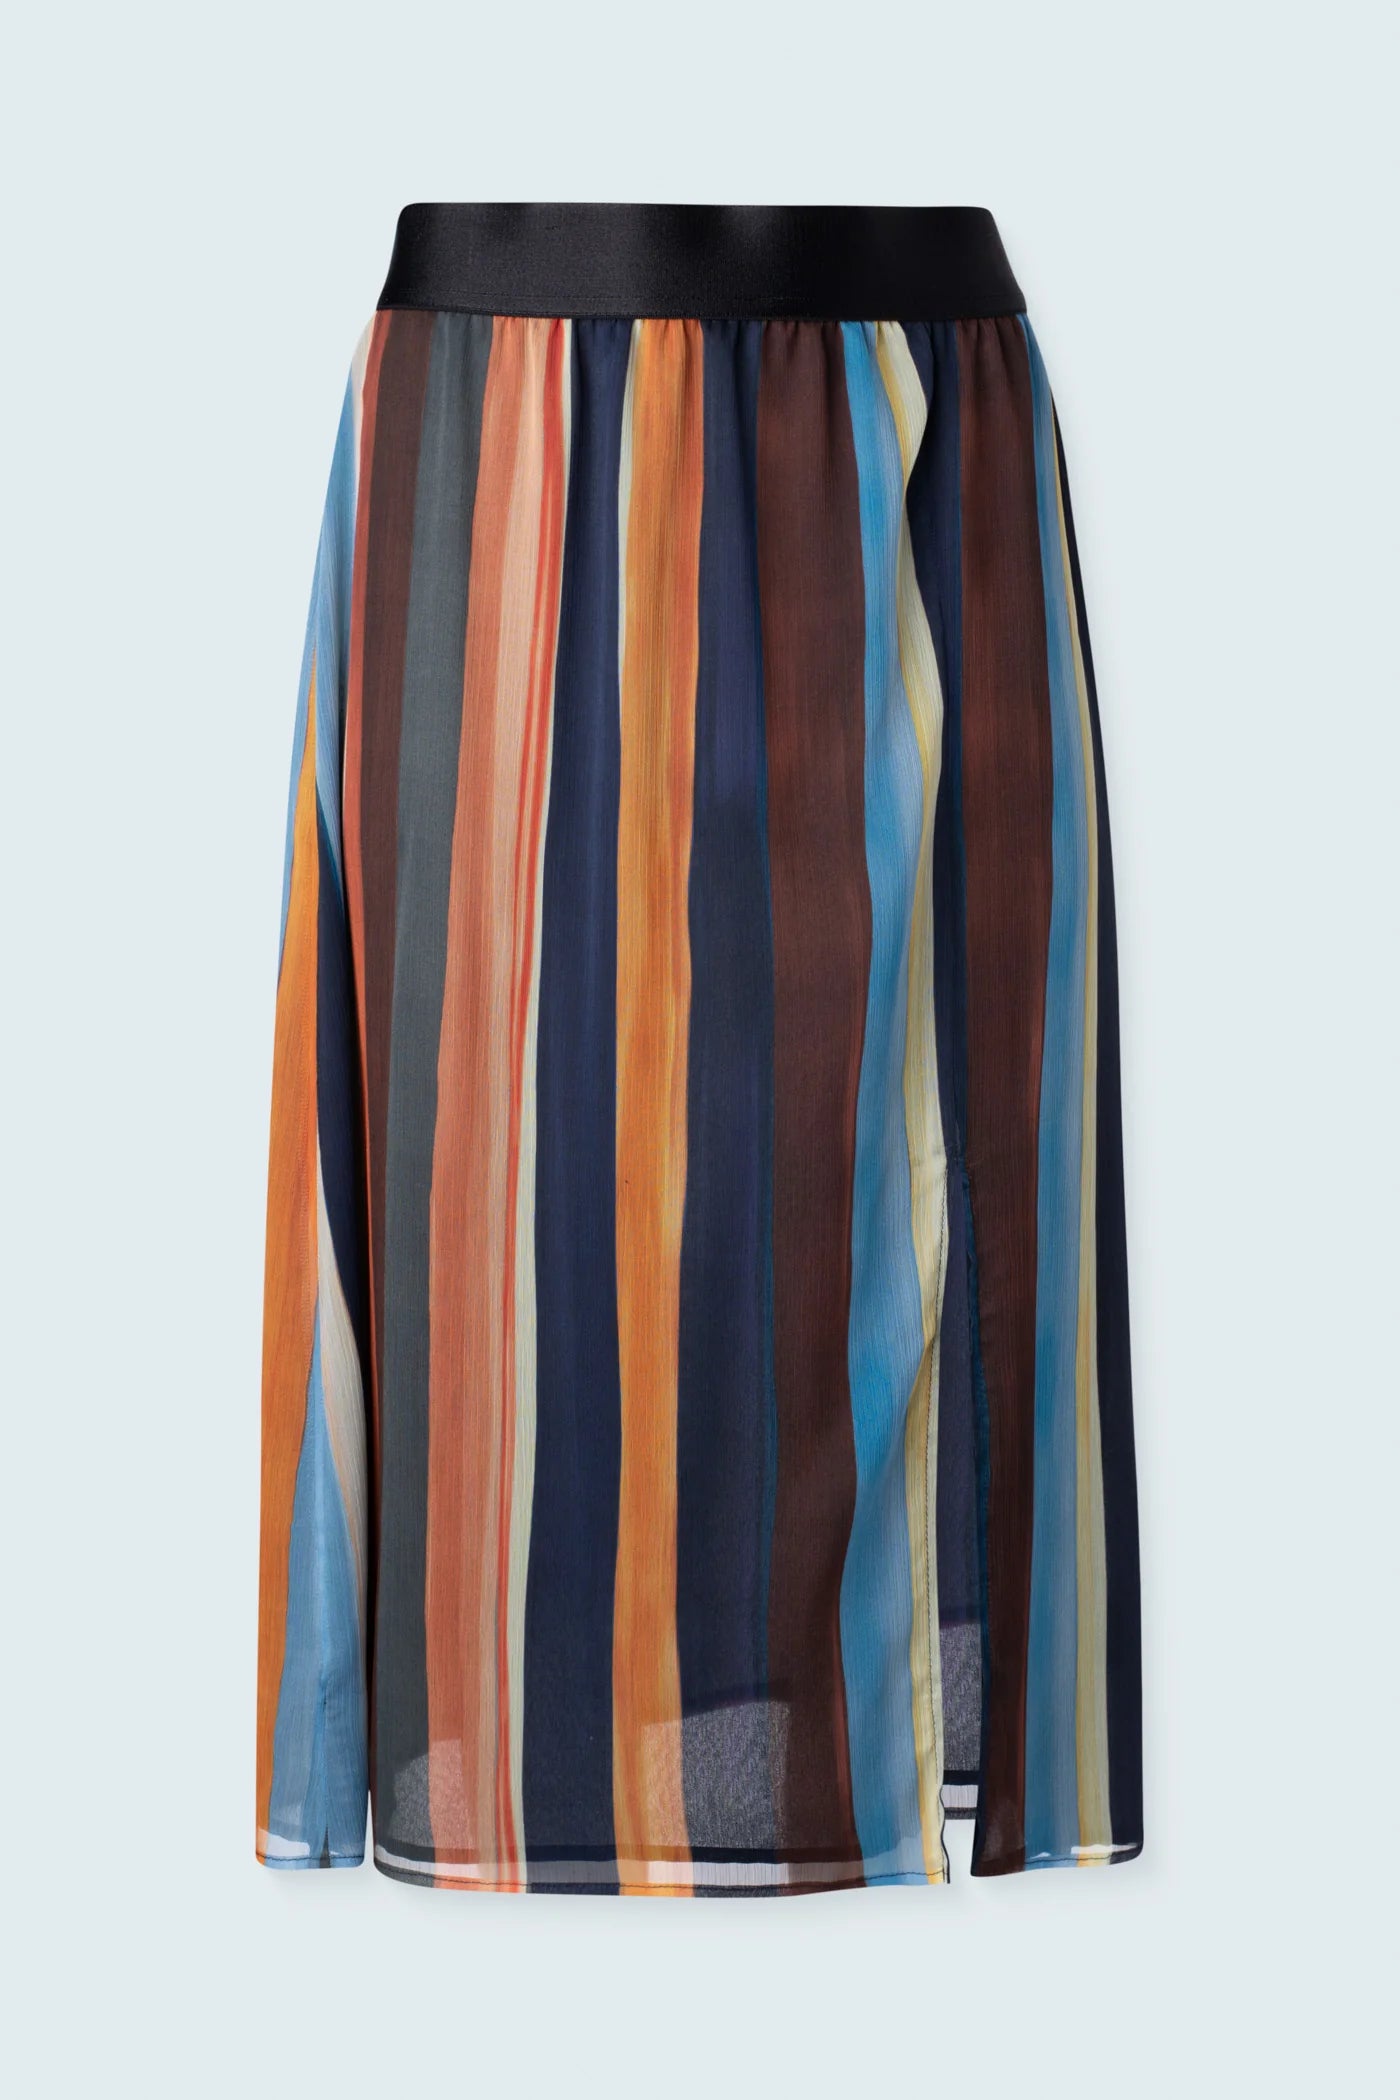 Iris Setlakwe Chiffon Skirt with Front Slit - 0